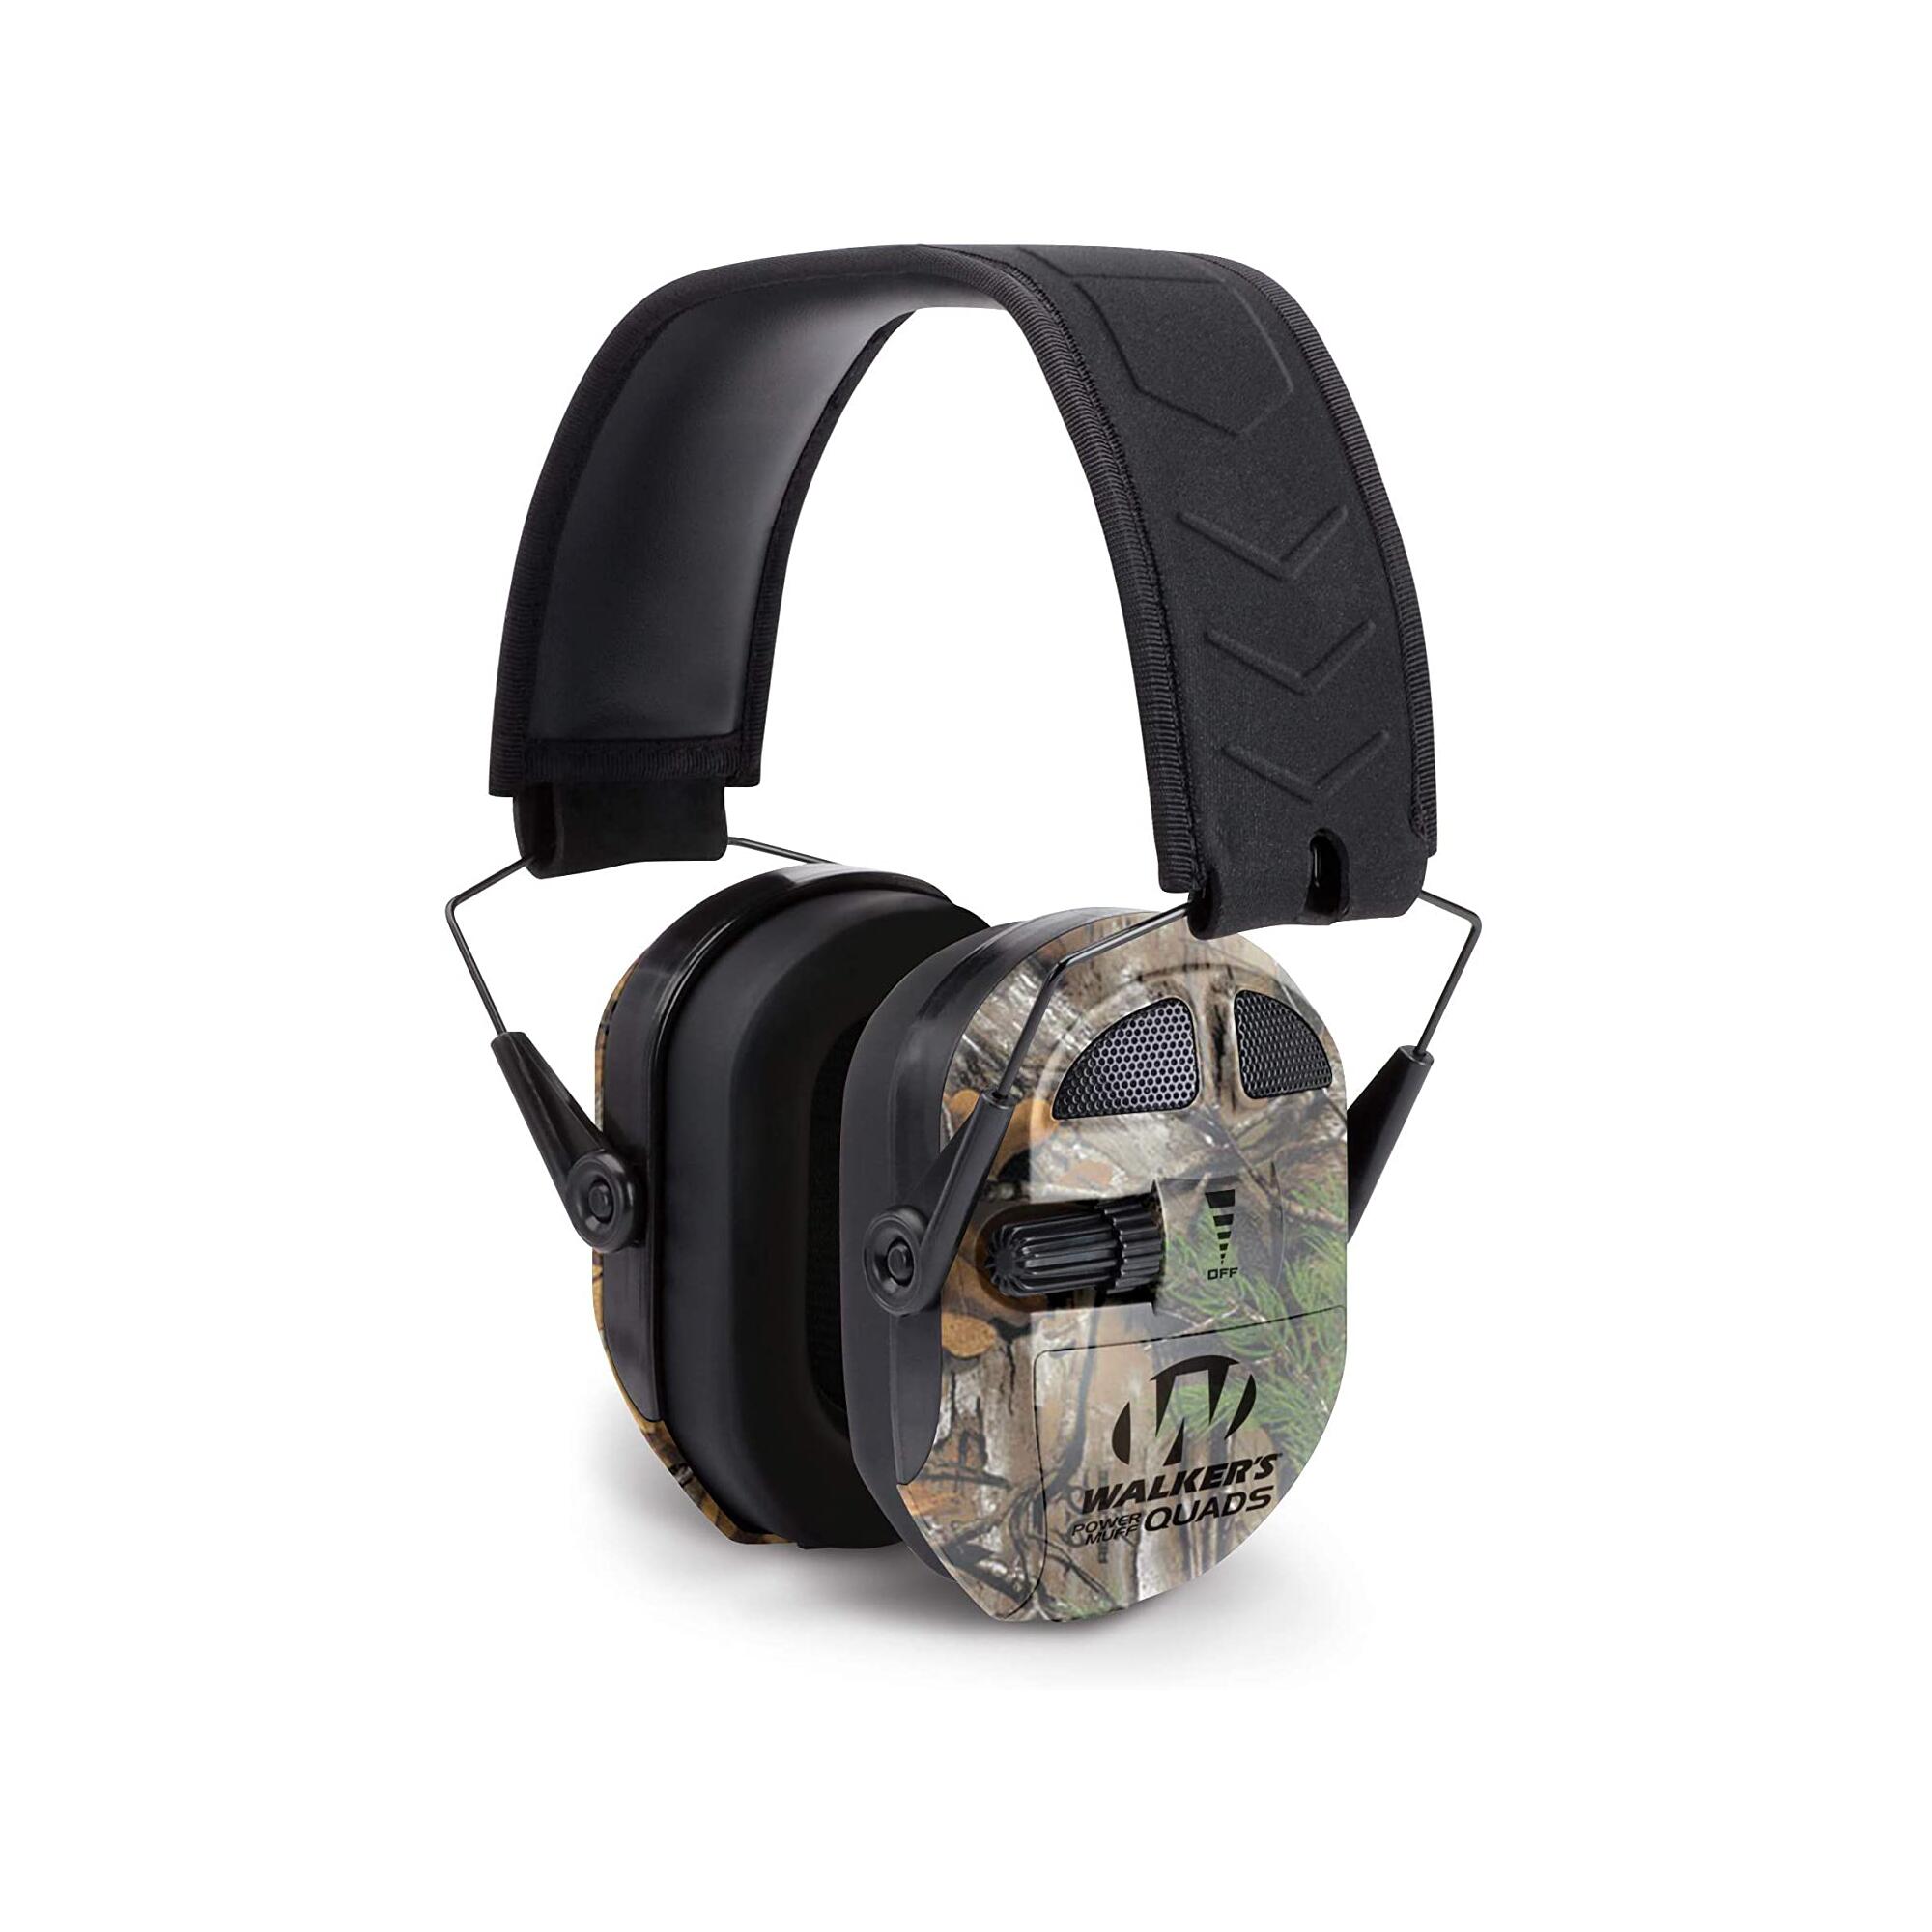 Cască electronică de Protecție auditivă negru RAZOR QUADS QUADS WALKER’S decathlon.ro